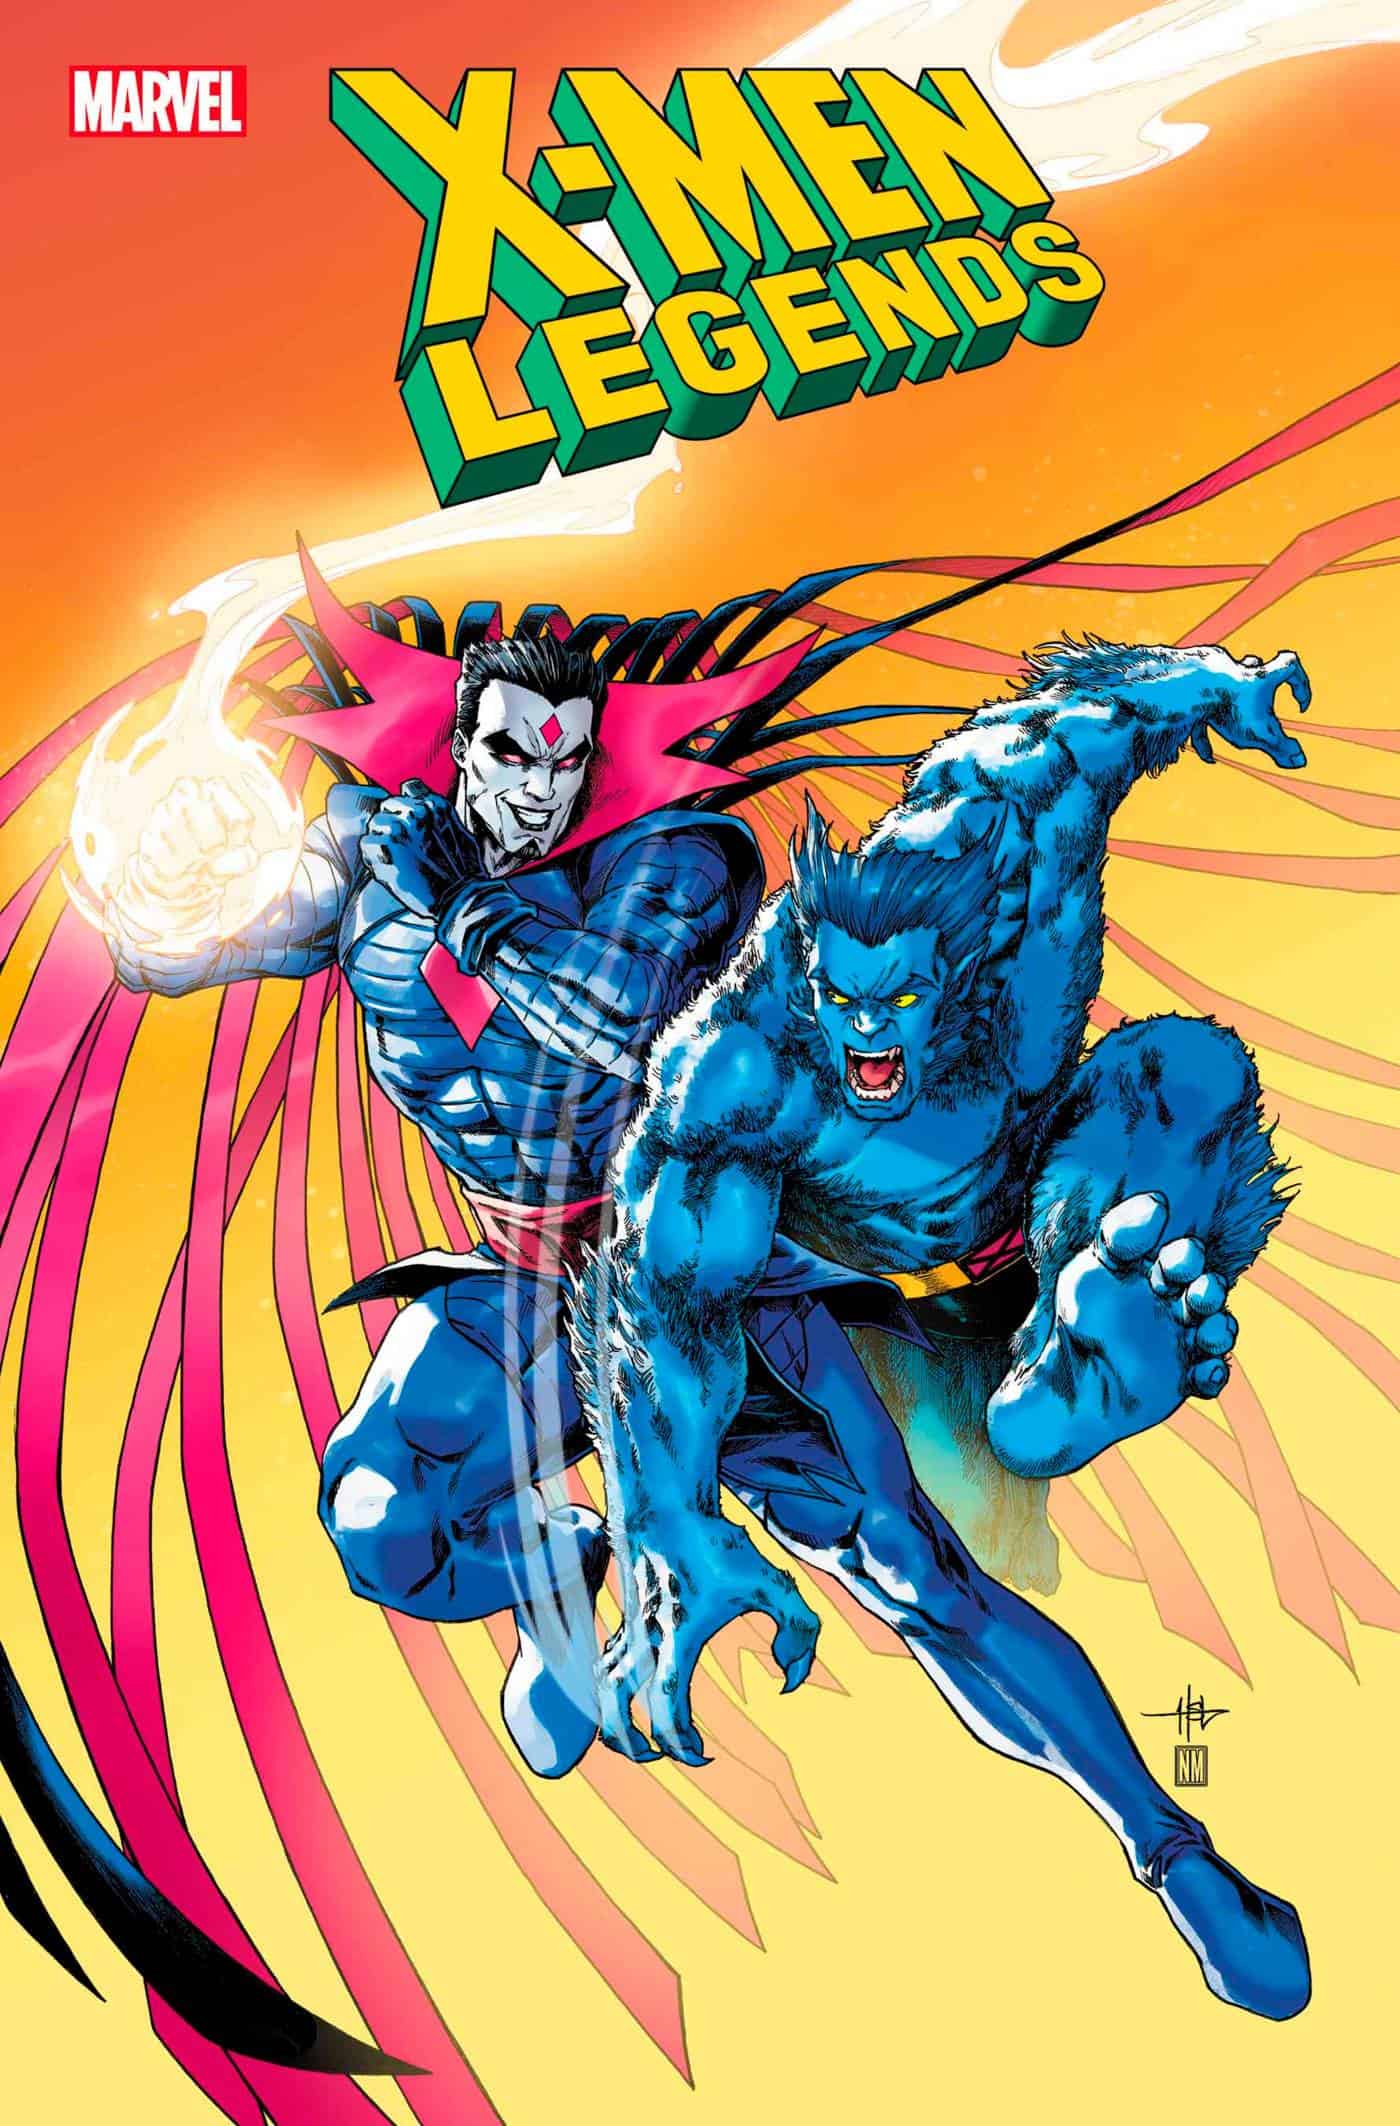 EXCLUSIVE SNEAK PEEK: Preview of MARVEL COMICS X-MEN: LEGENDS #10 - Comic Watch